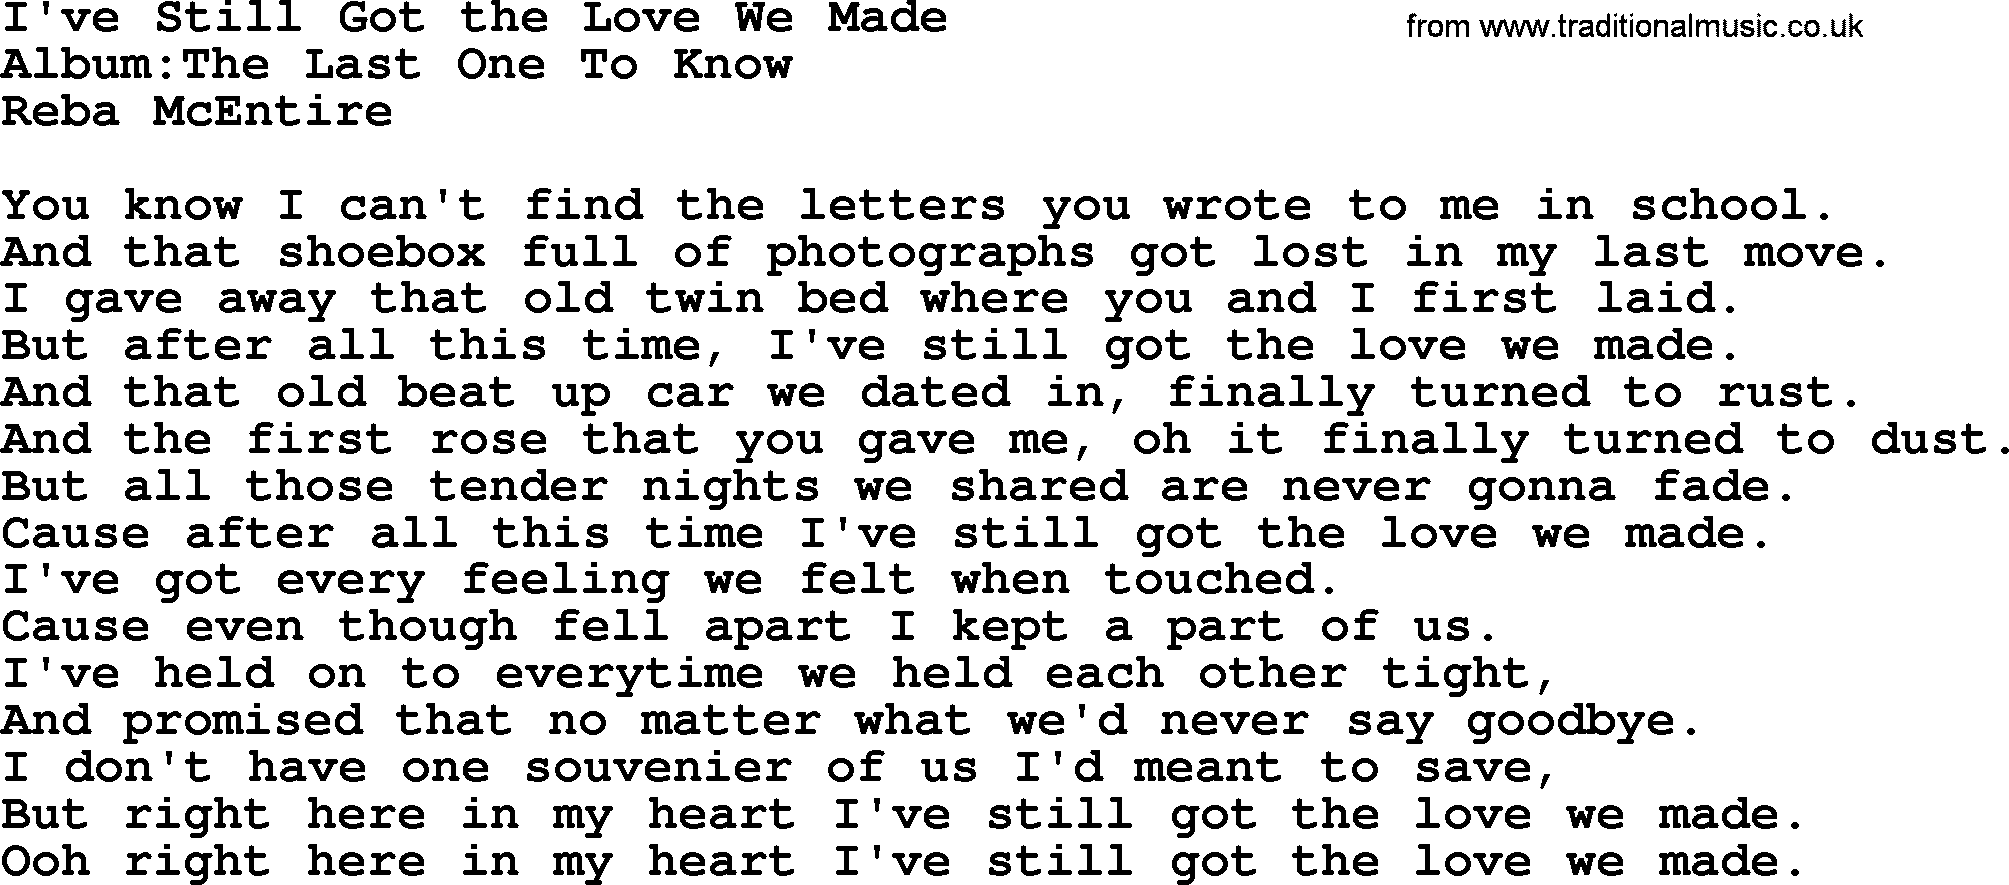 Reba McEntire song: I've Still Got the Love We Made lyrics